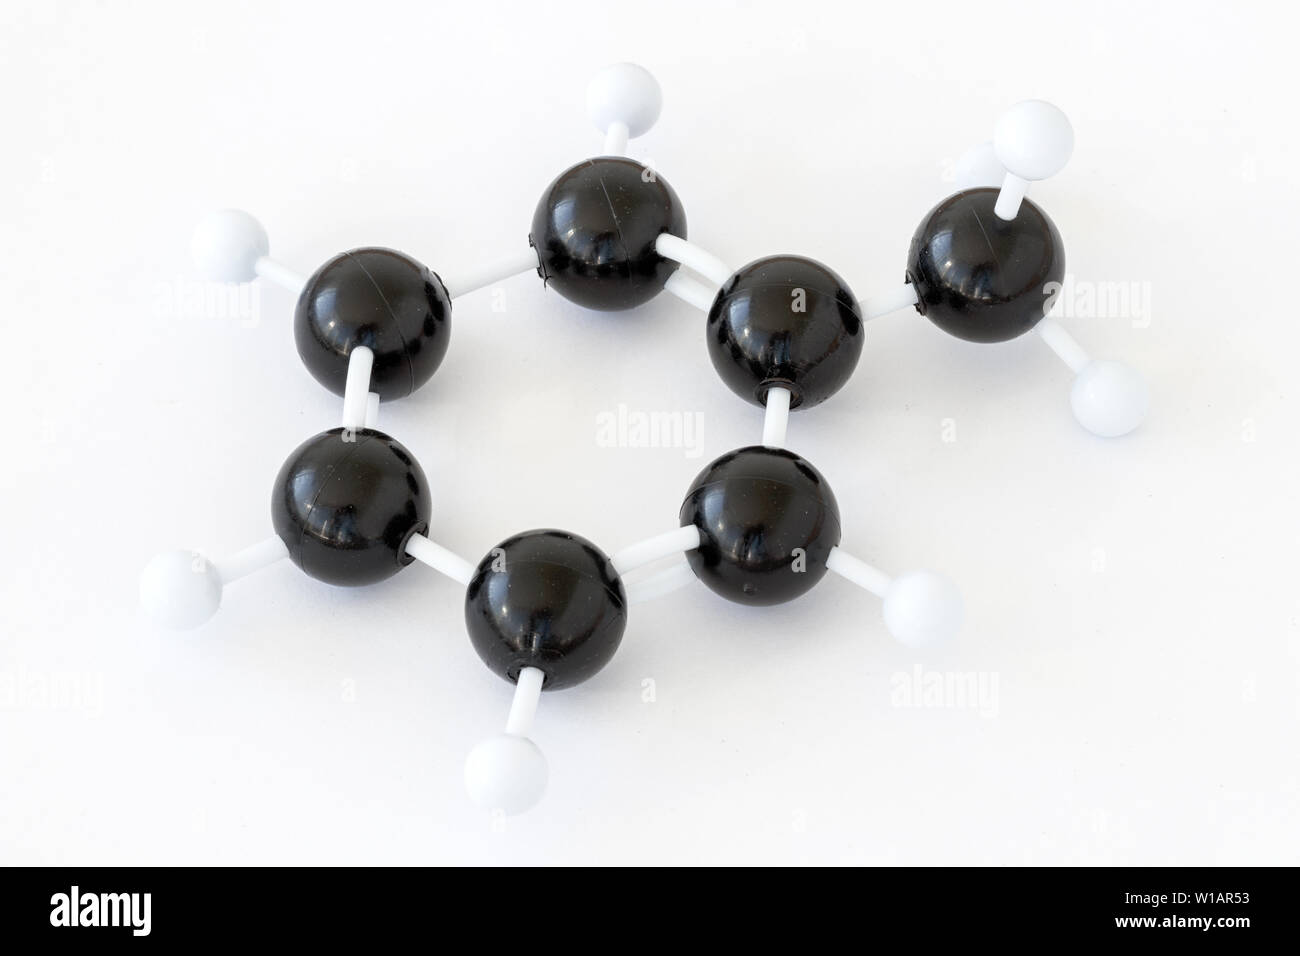 Modèle en plastique à bille et bâton d'une molécule de toluène ou de méthylbenzène (C7H8), avec structure de kékule sur fond blanc. Groupe méthyle droit. Banque D'Images